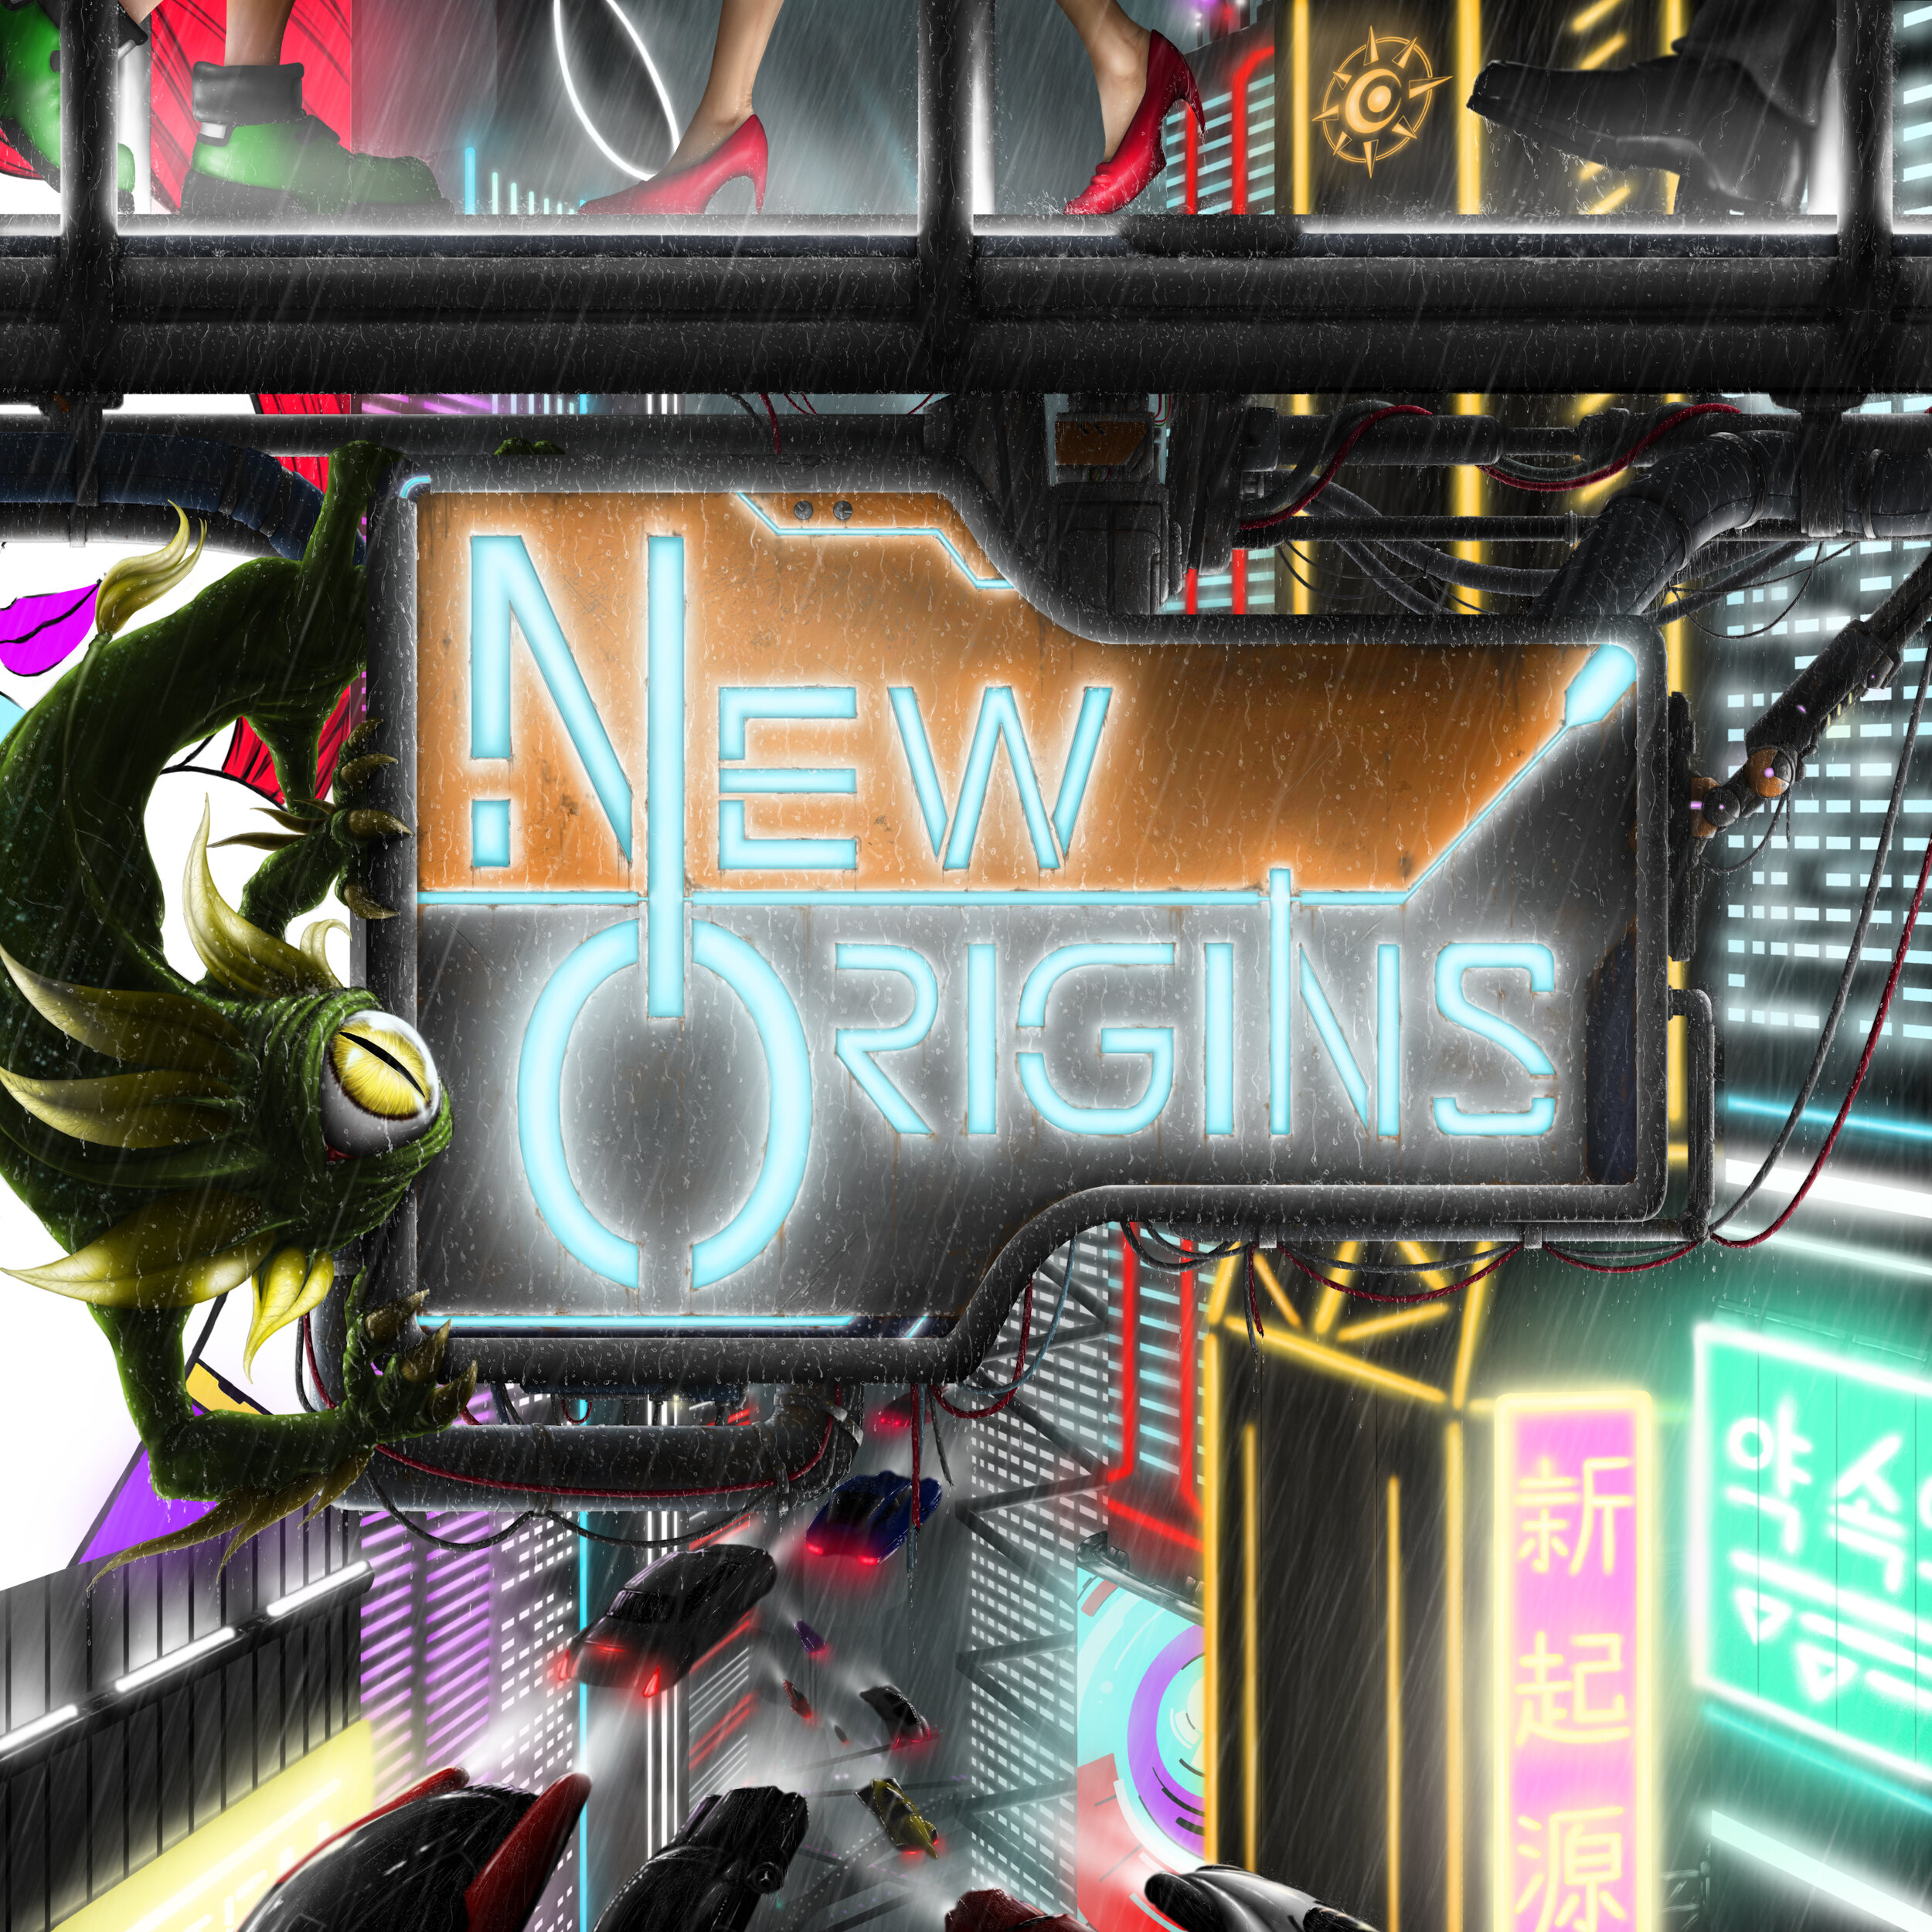 New Origins Redux - Scifi_v2.jpg